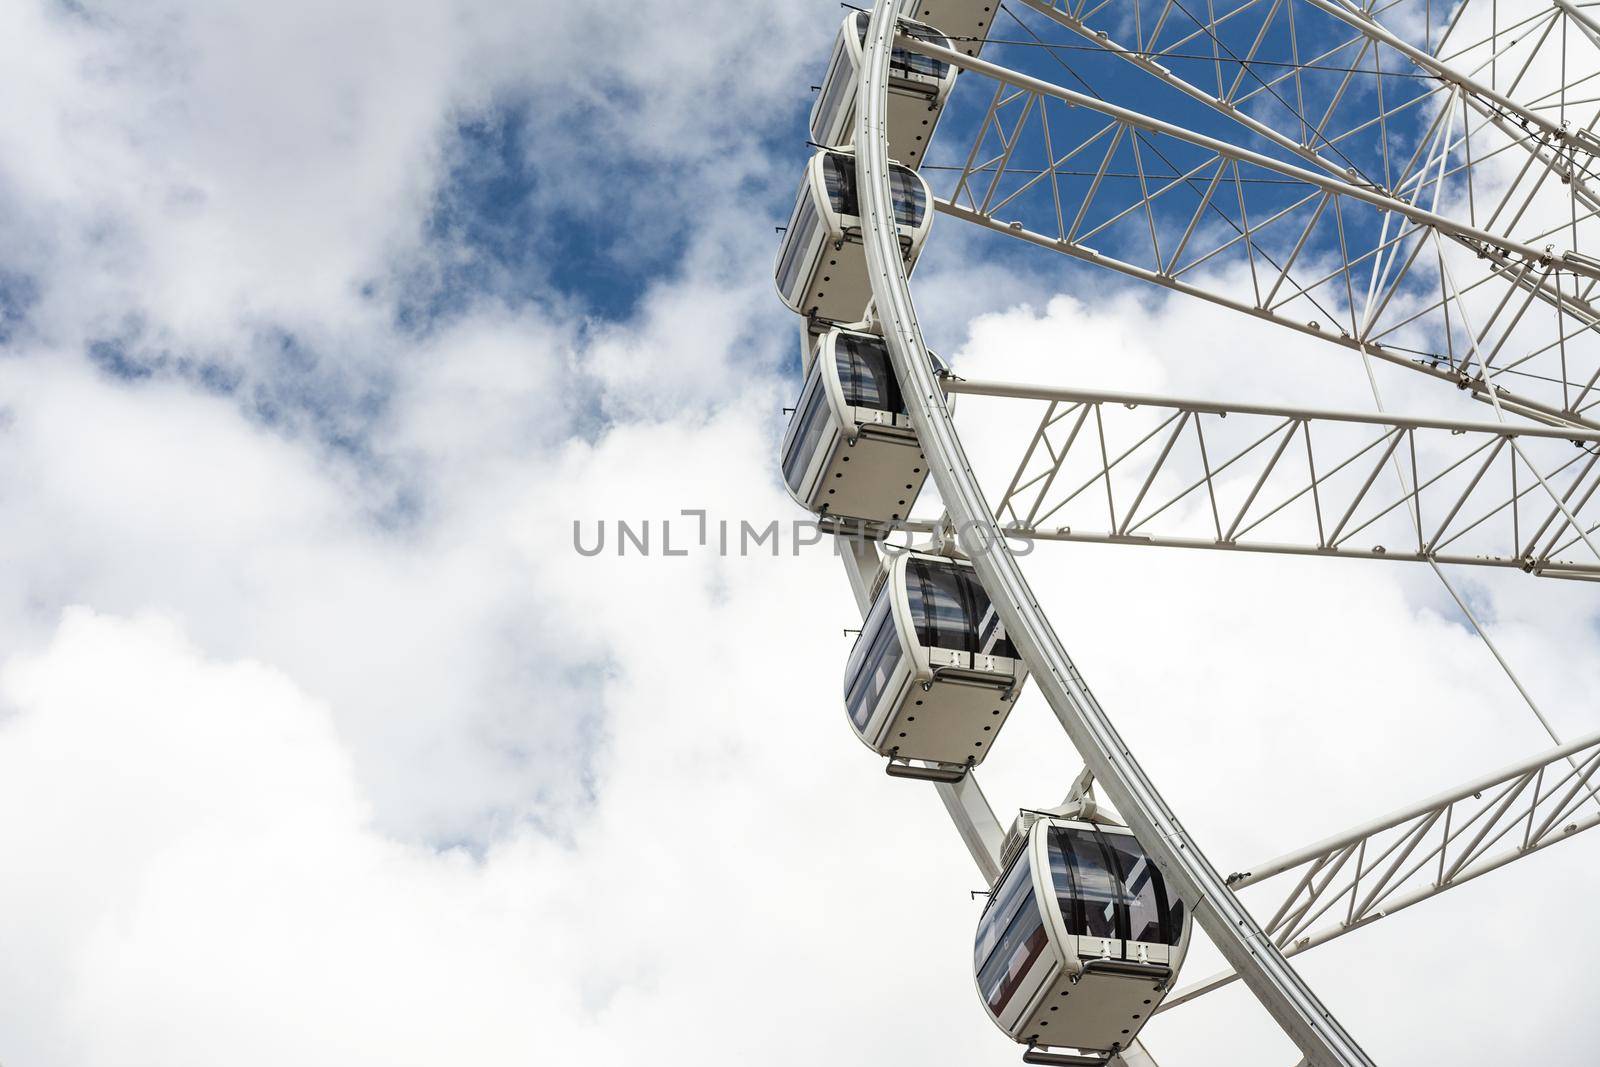 Big Ferris Wheel by wdnet_studio